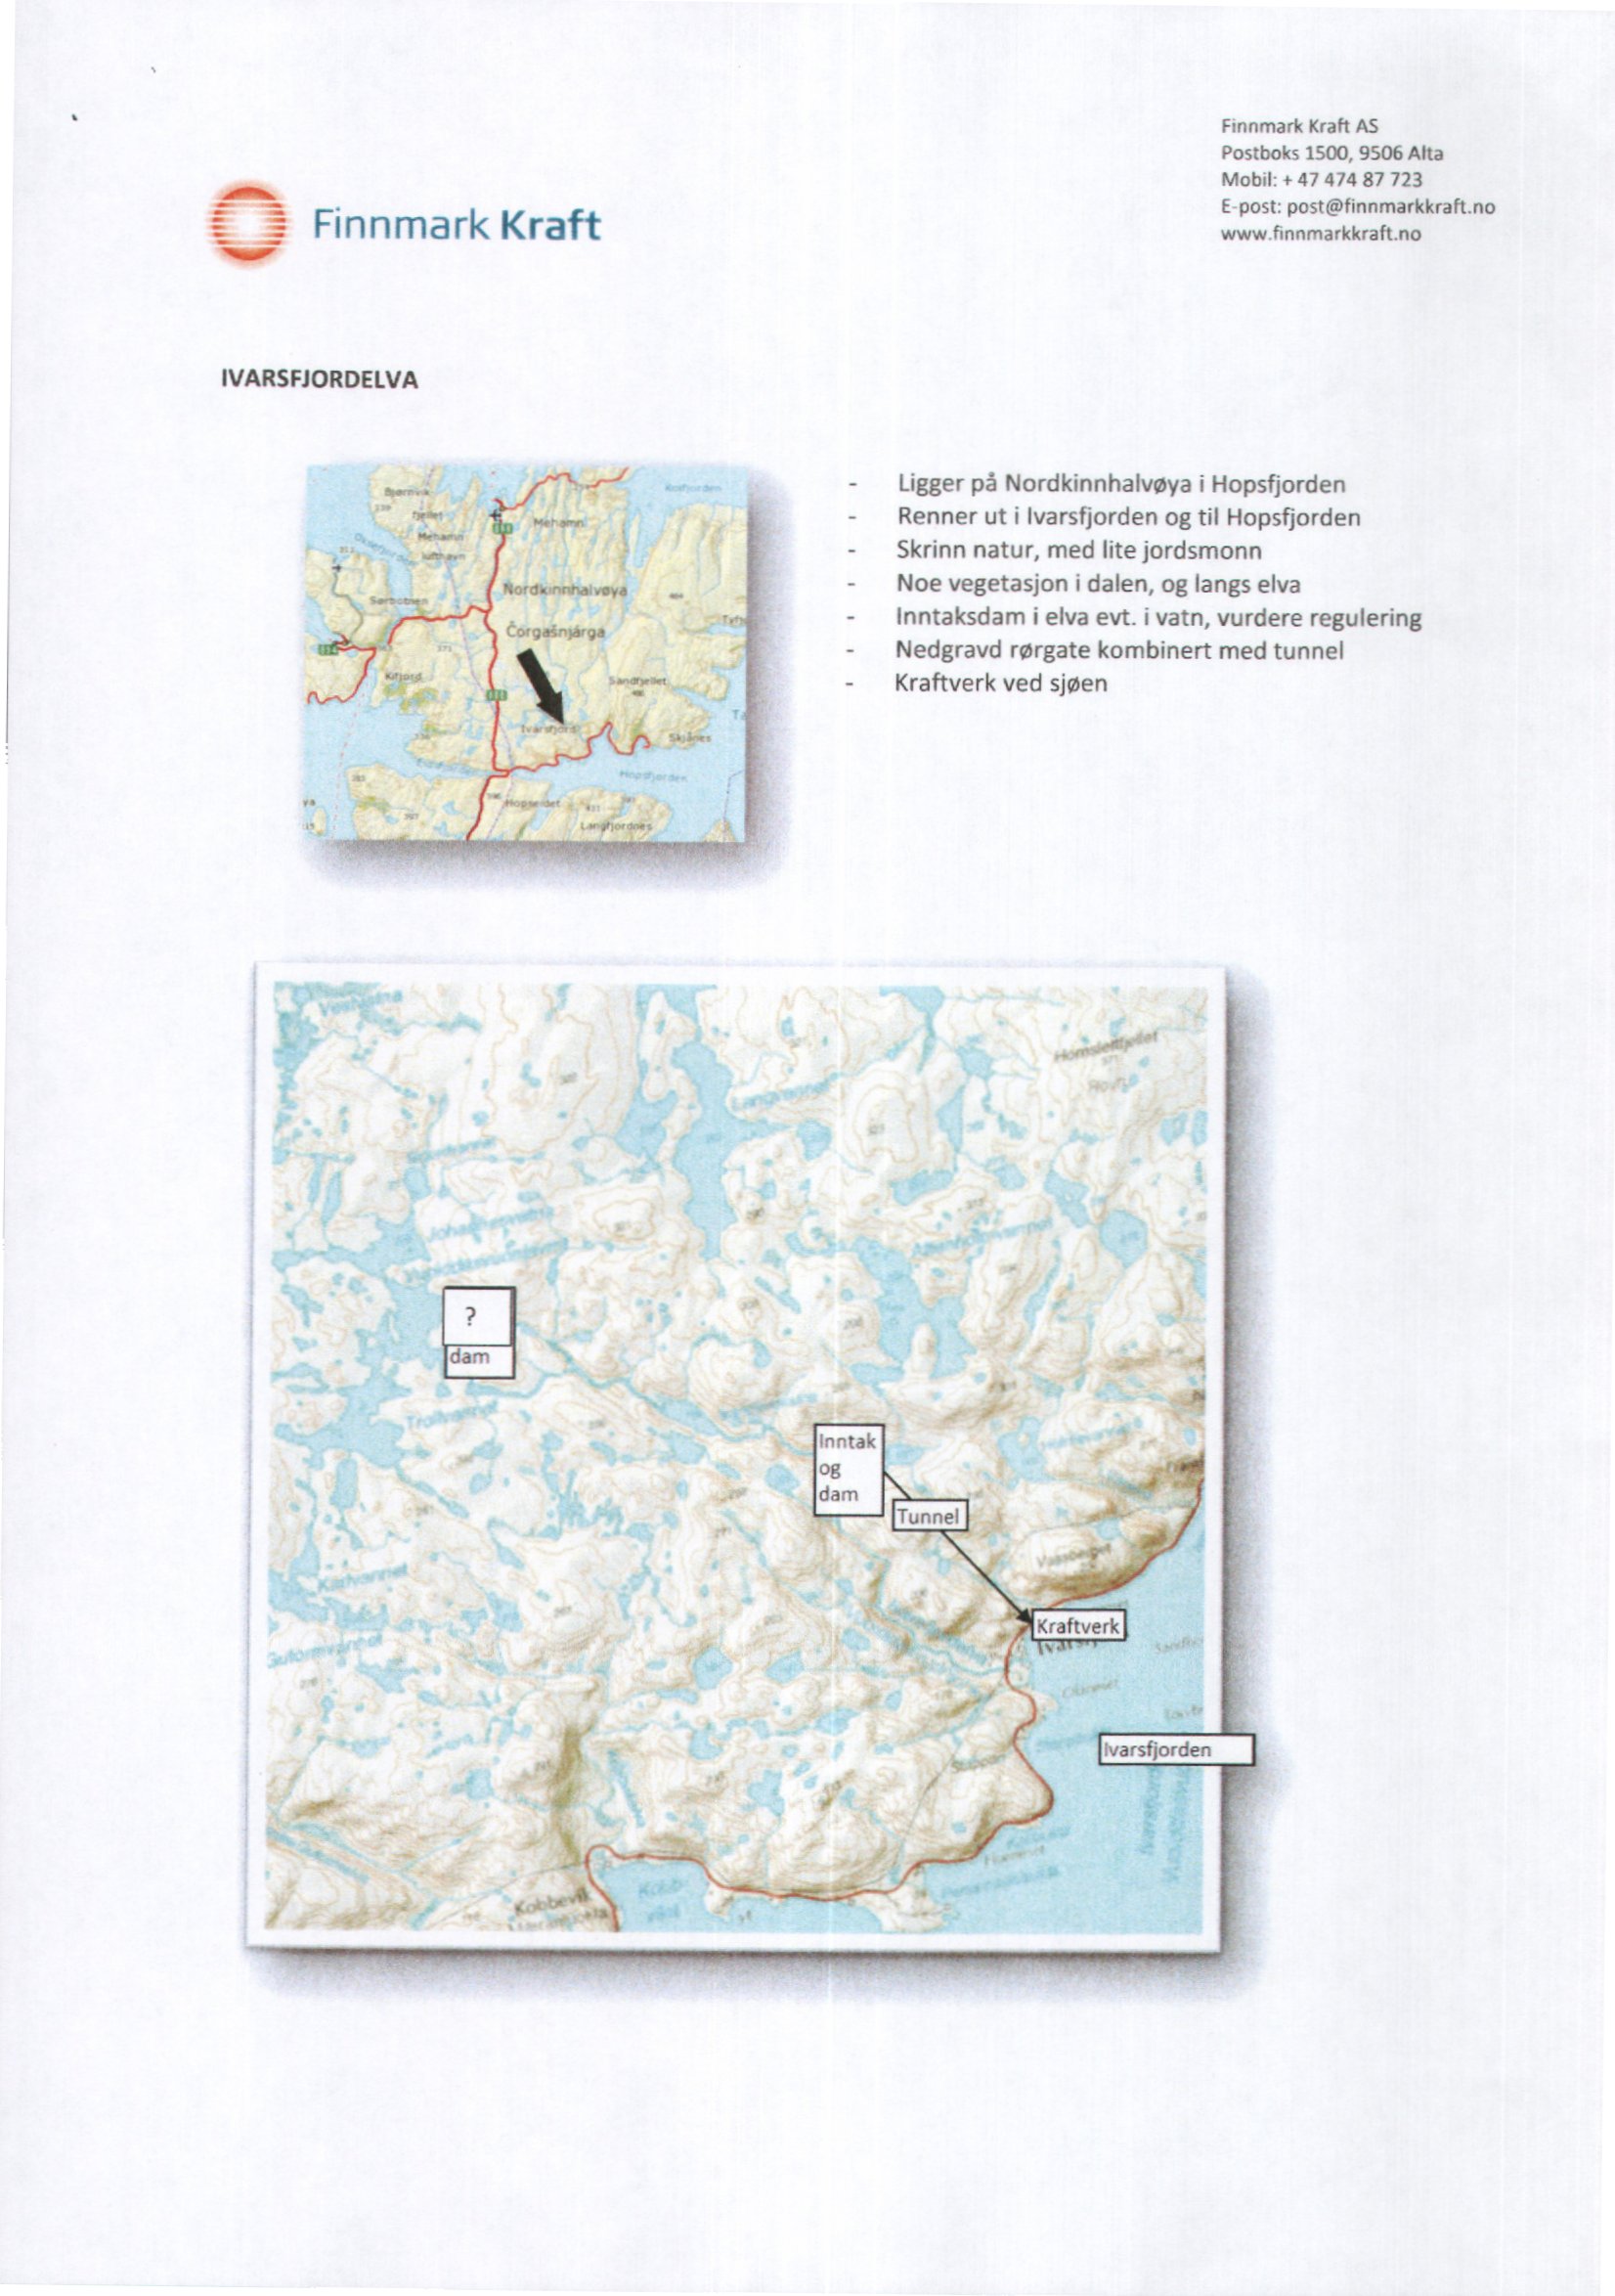 I Finnmark Kraft Mobil: «47 474 87 723 IVARSFJORDELVA -en Illonsionnhalbs torwainiårwe s.